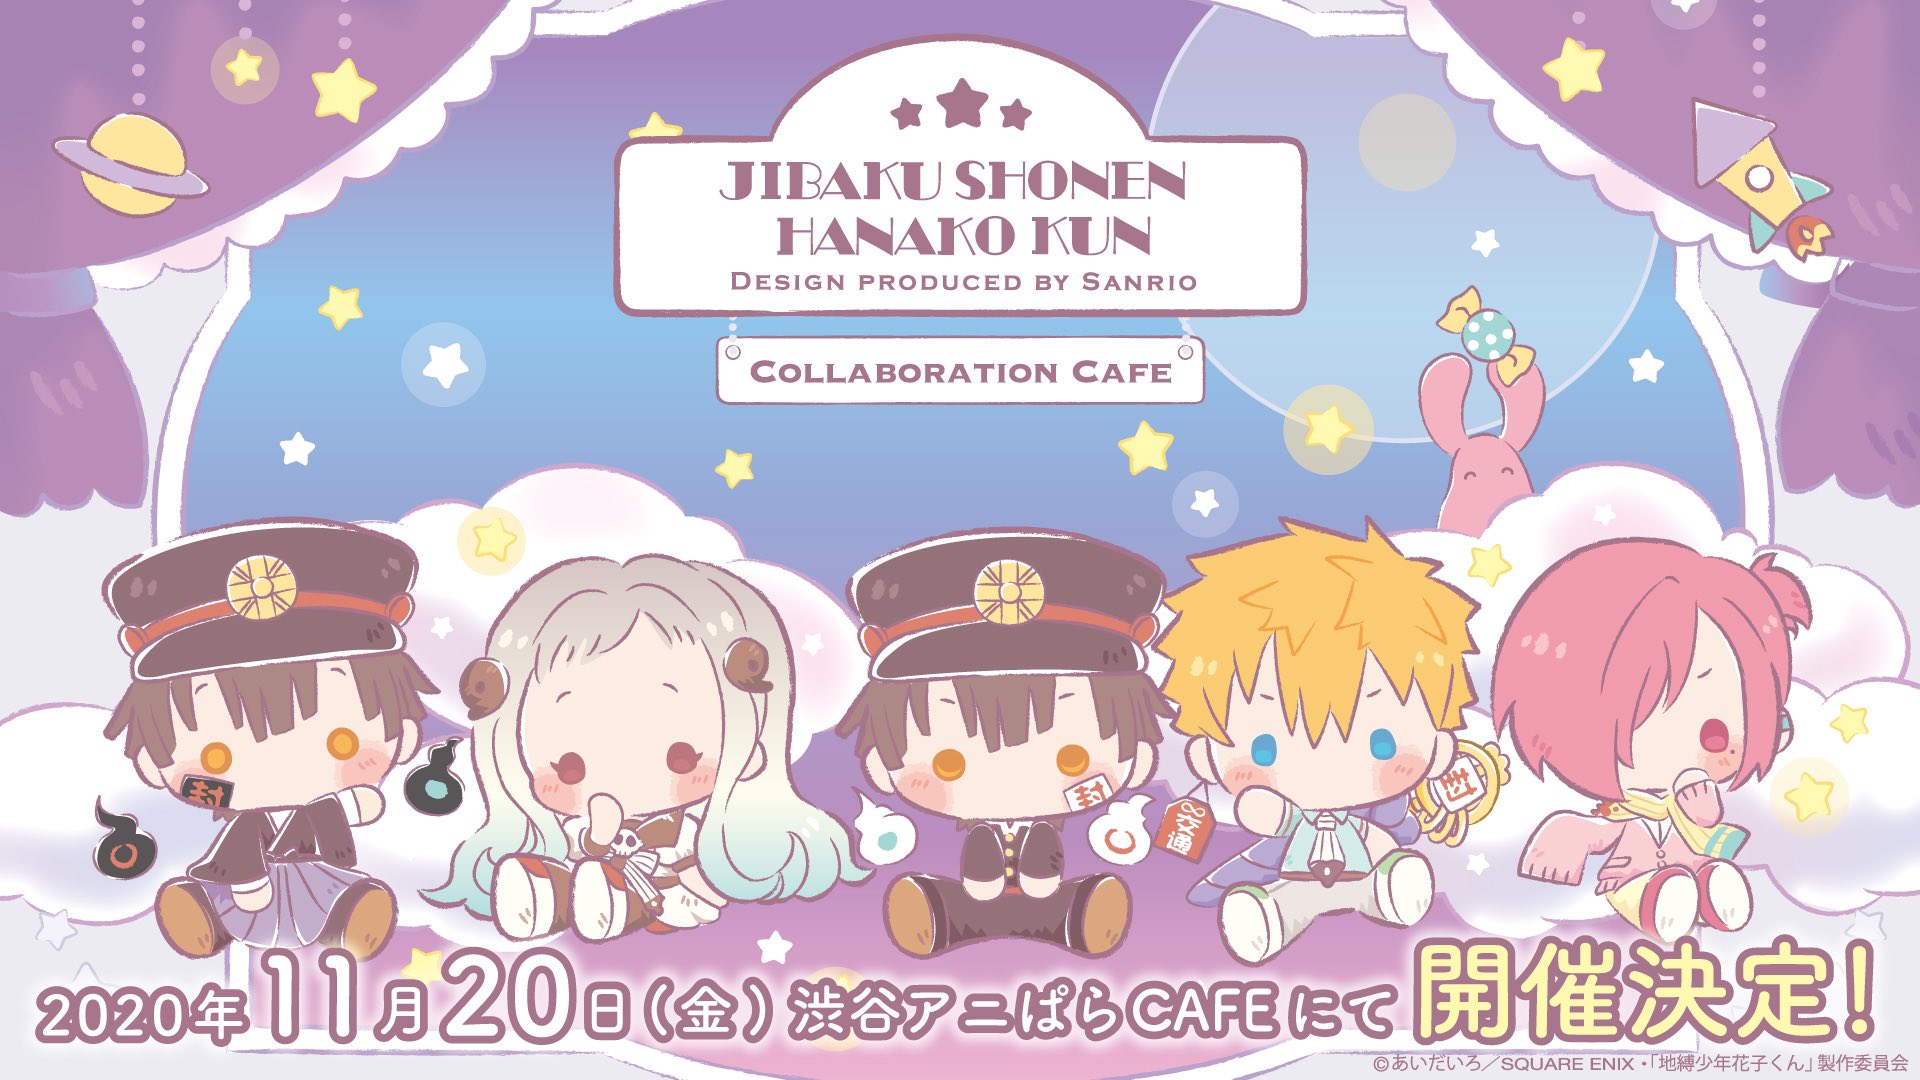 花子くん × サンリオ カフェ in アニぱらカフェ渋谷 11.20-12.30 開催!